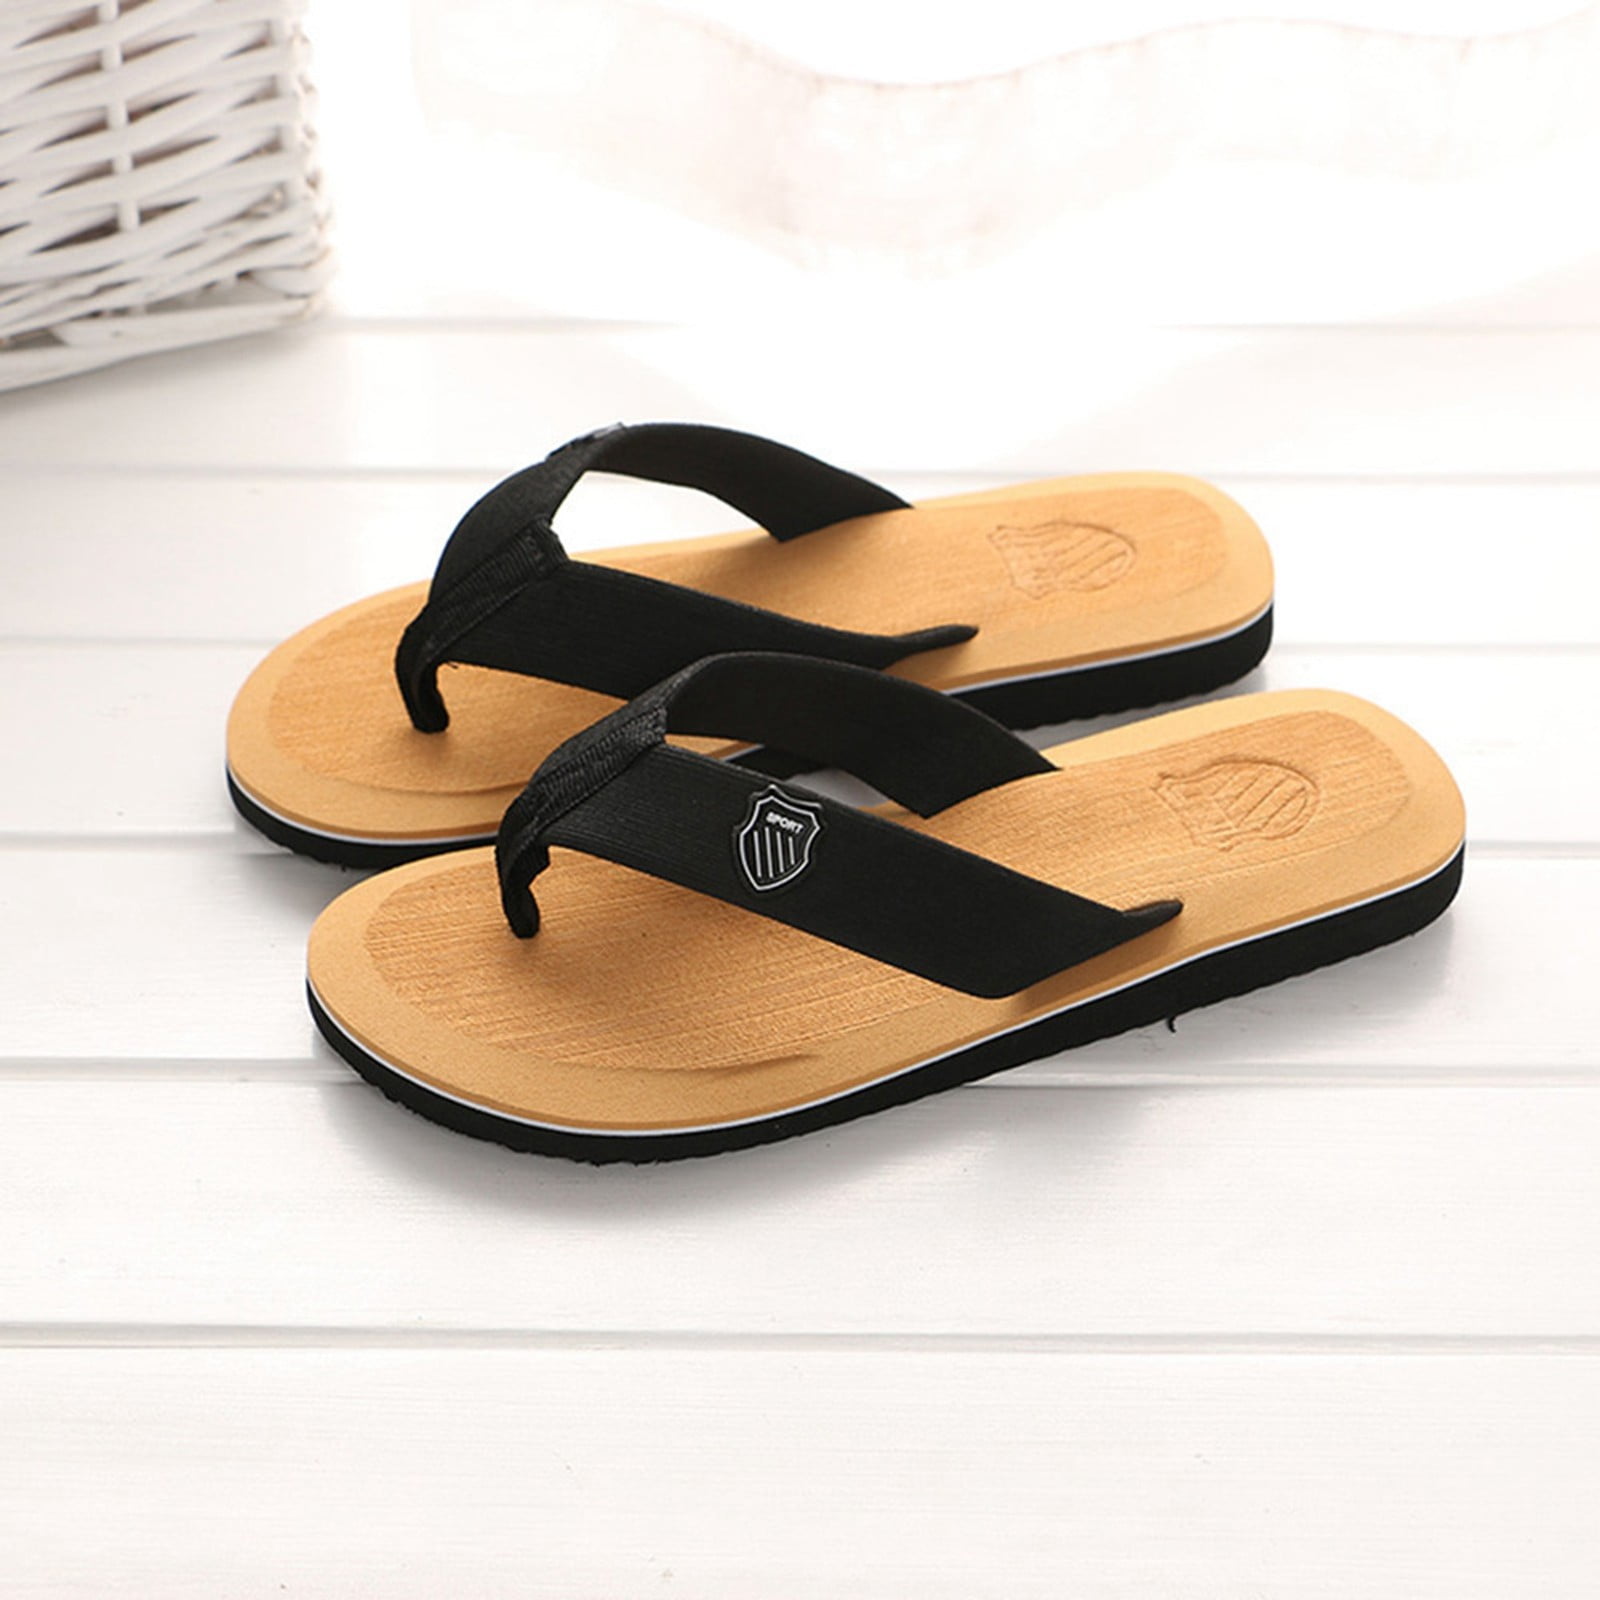 Foraging dimple Men's Summer Flip-flops Slippers Beach Sandals Indoor ...